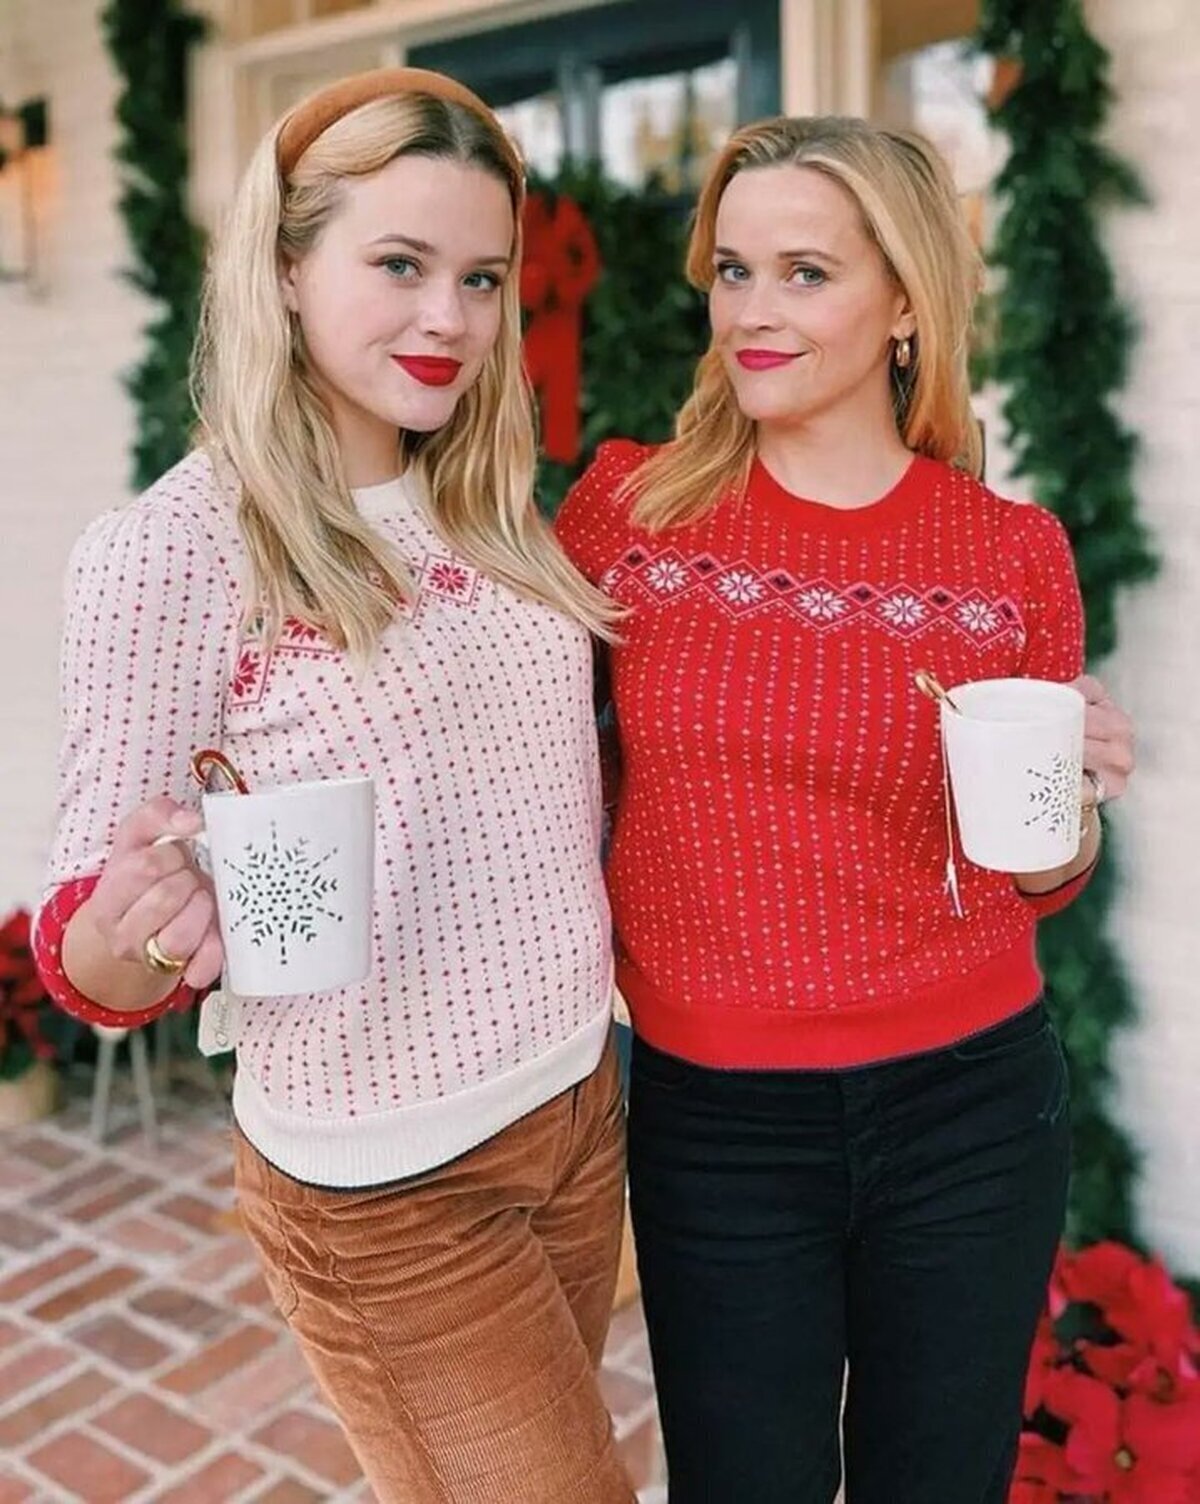 La hija de Reese Whiterspoon se parece más a Reese Whiterspoon que Reese Whiterspoon